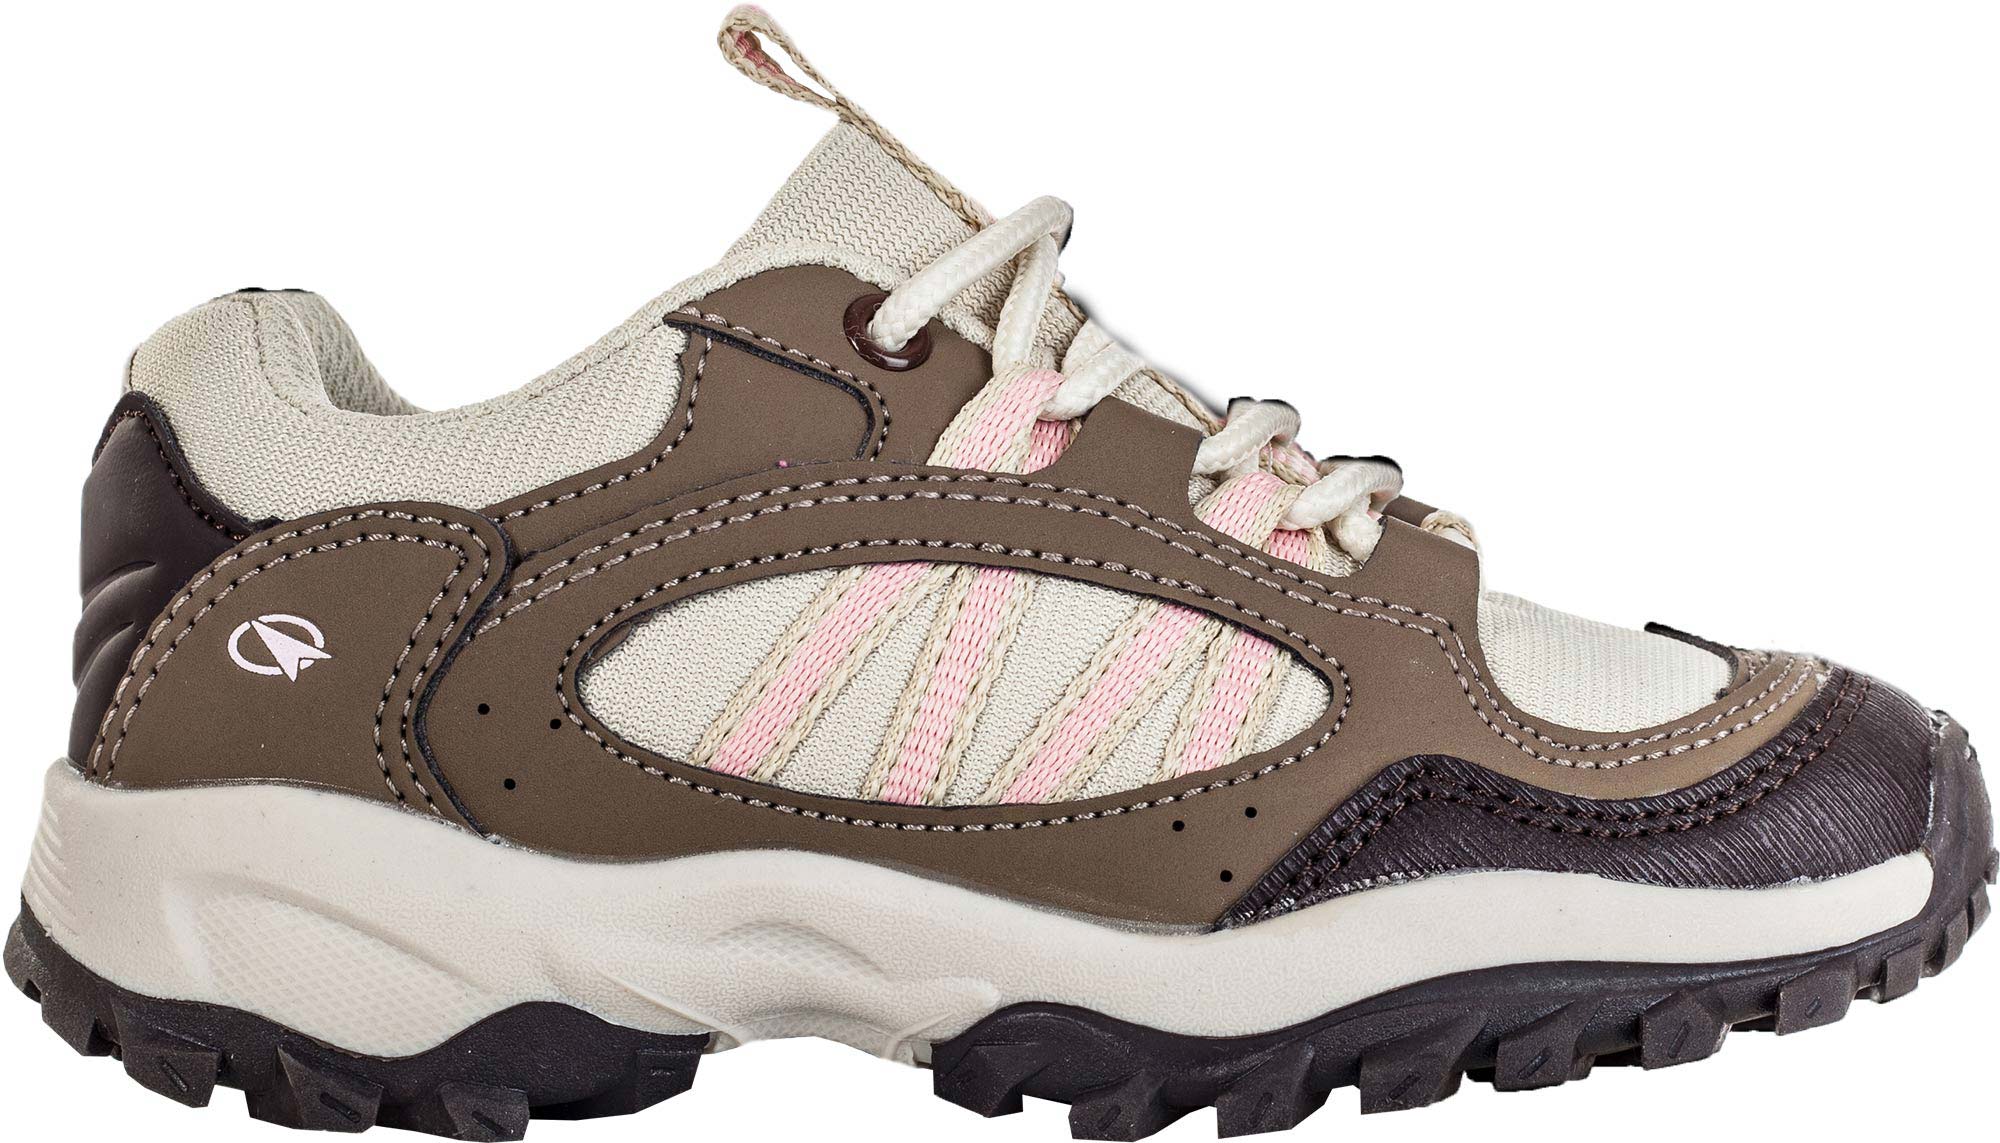 DARIO - Children's trekking shoes